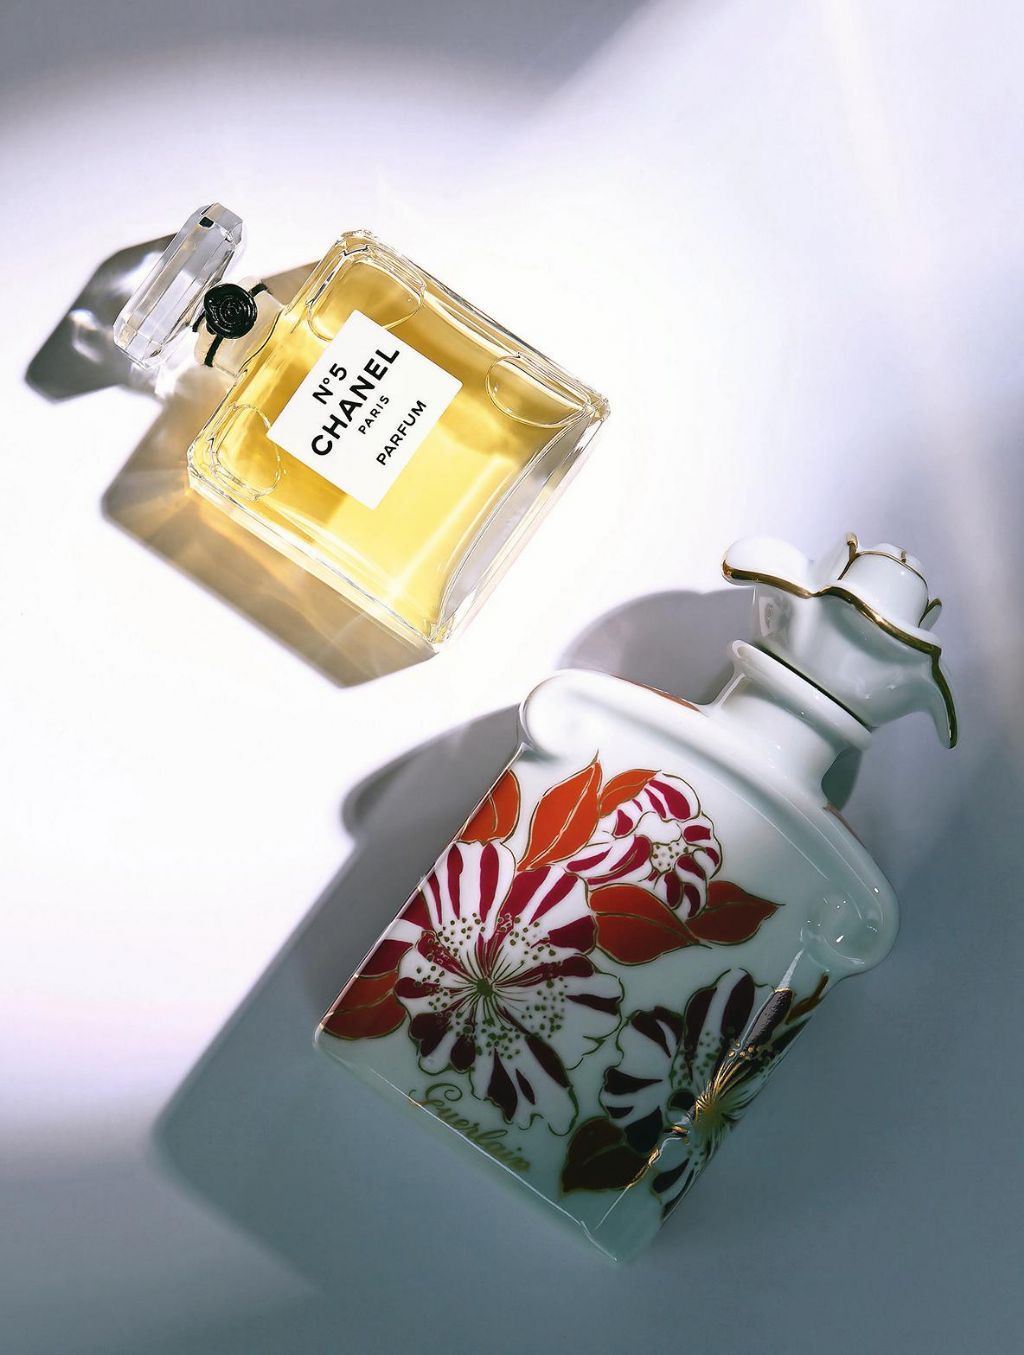 Le Parfumeur de Tunis - Lancé en 2018, Sur la Route de Louis Vuitton est un  parfum Hespéridé aromatique pour homme. Le nez derrière ce parfum est  Jacques Cavallier. Les notes de